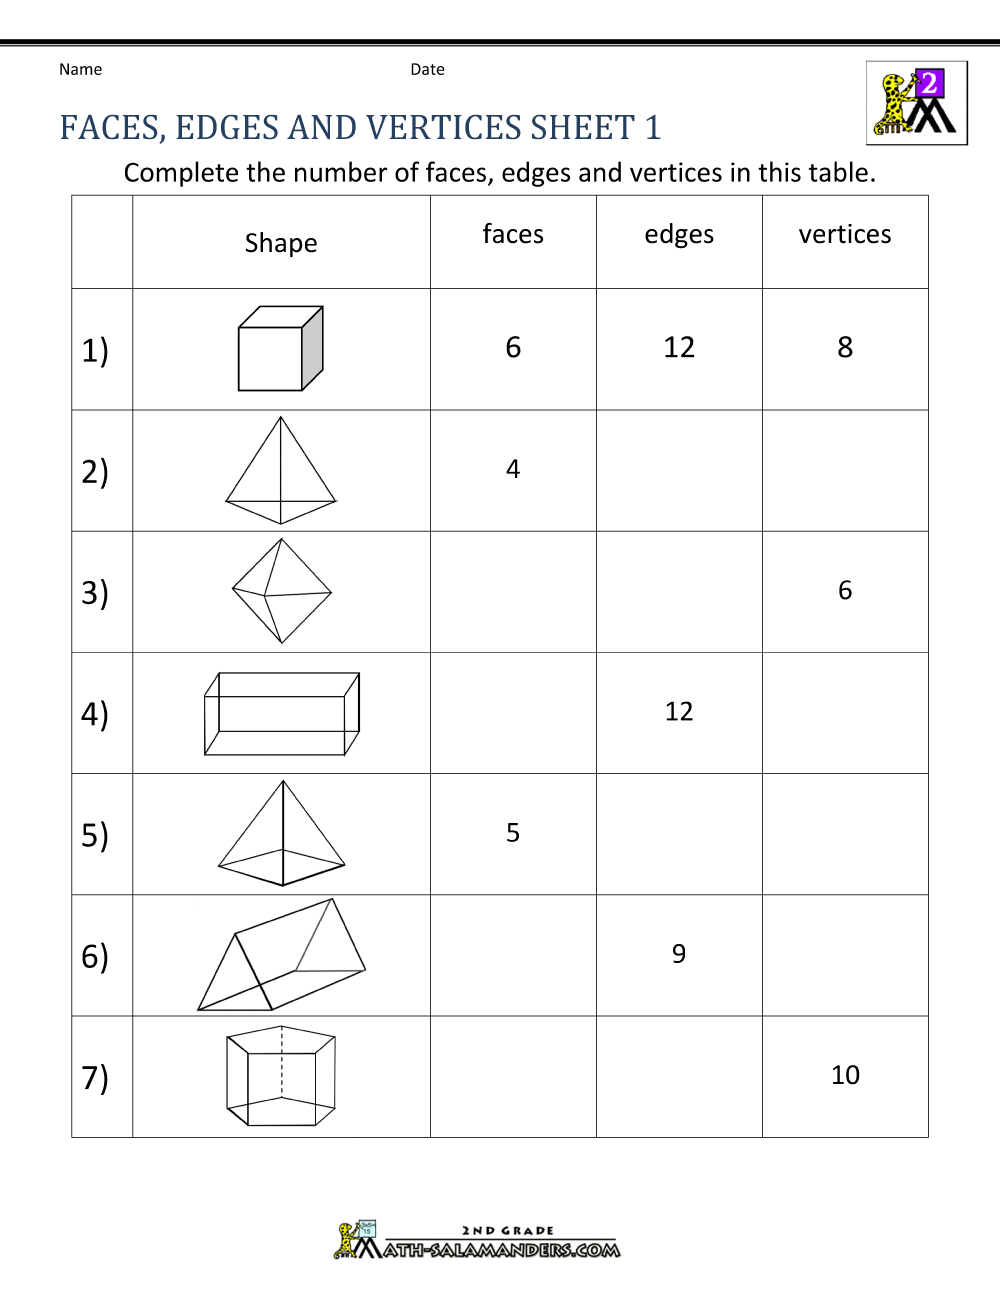 3d-shapes-worksheets-2nd-grade-3d-shapes-worksheets-2nd-grade-piper-abigail